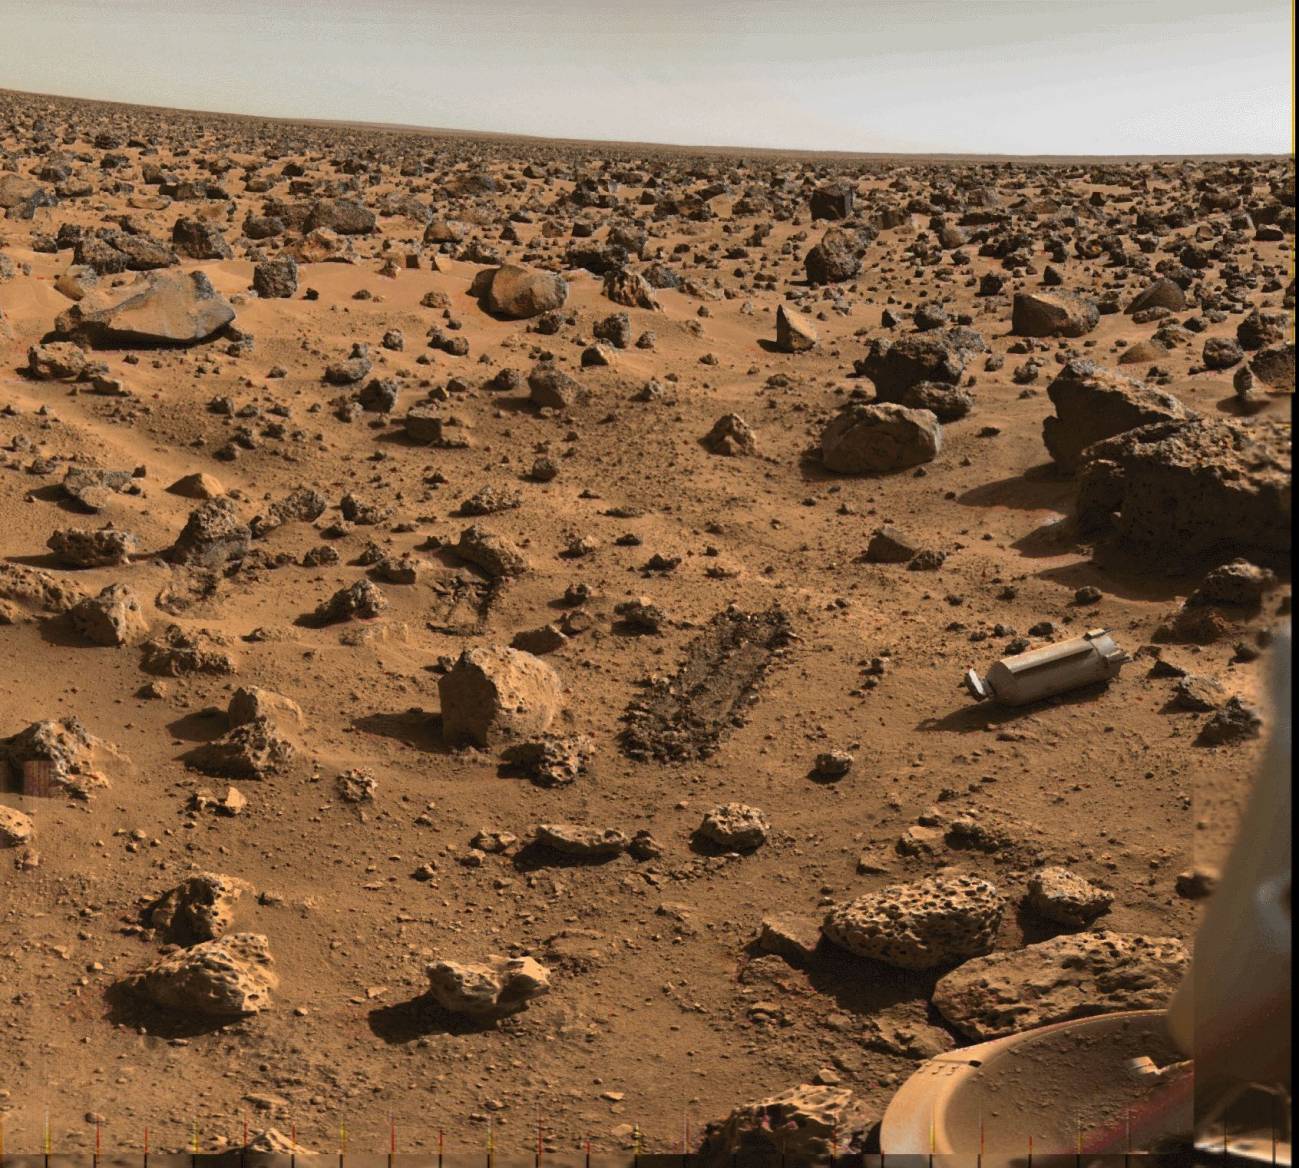 Superficie de Marte (imagen tomada por una sonda de la NASA)